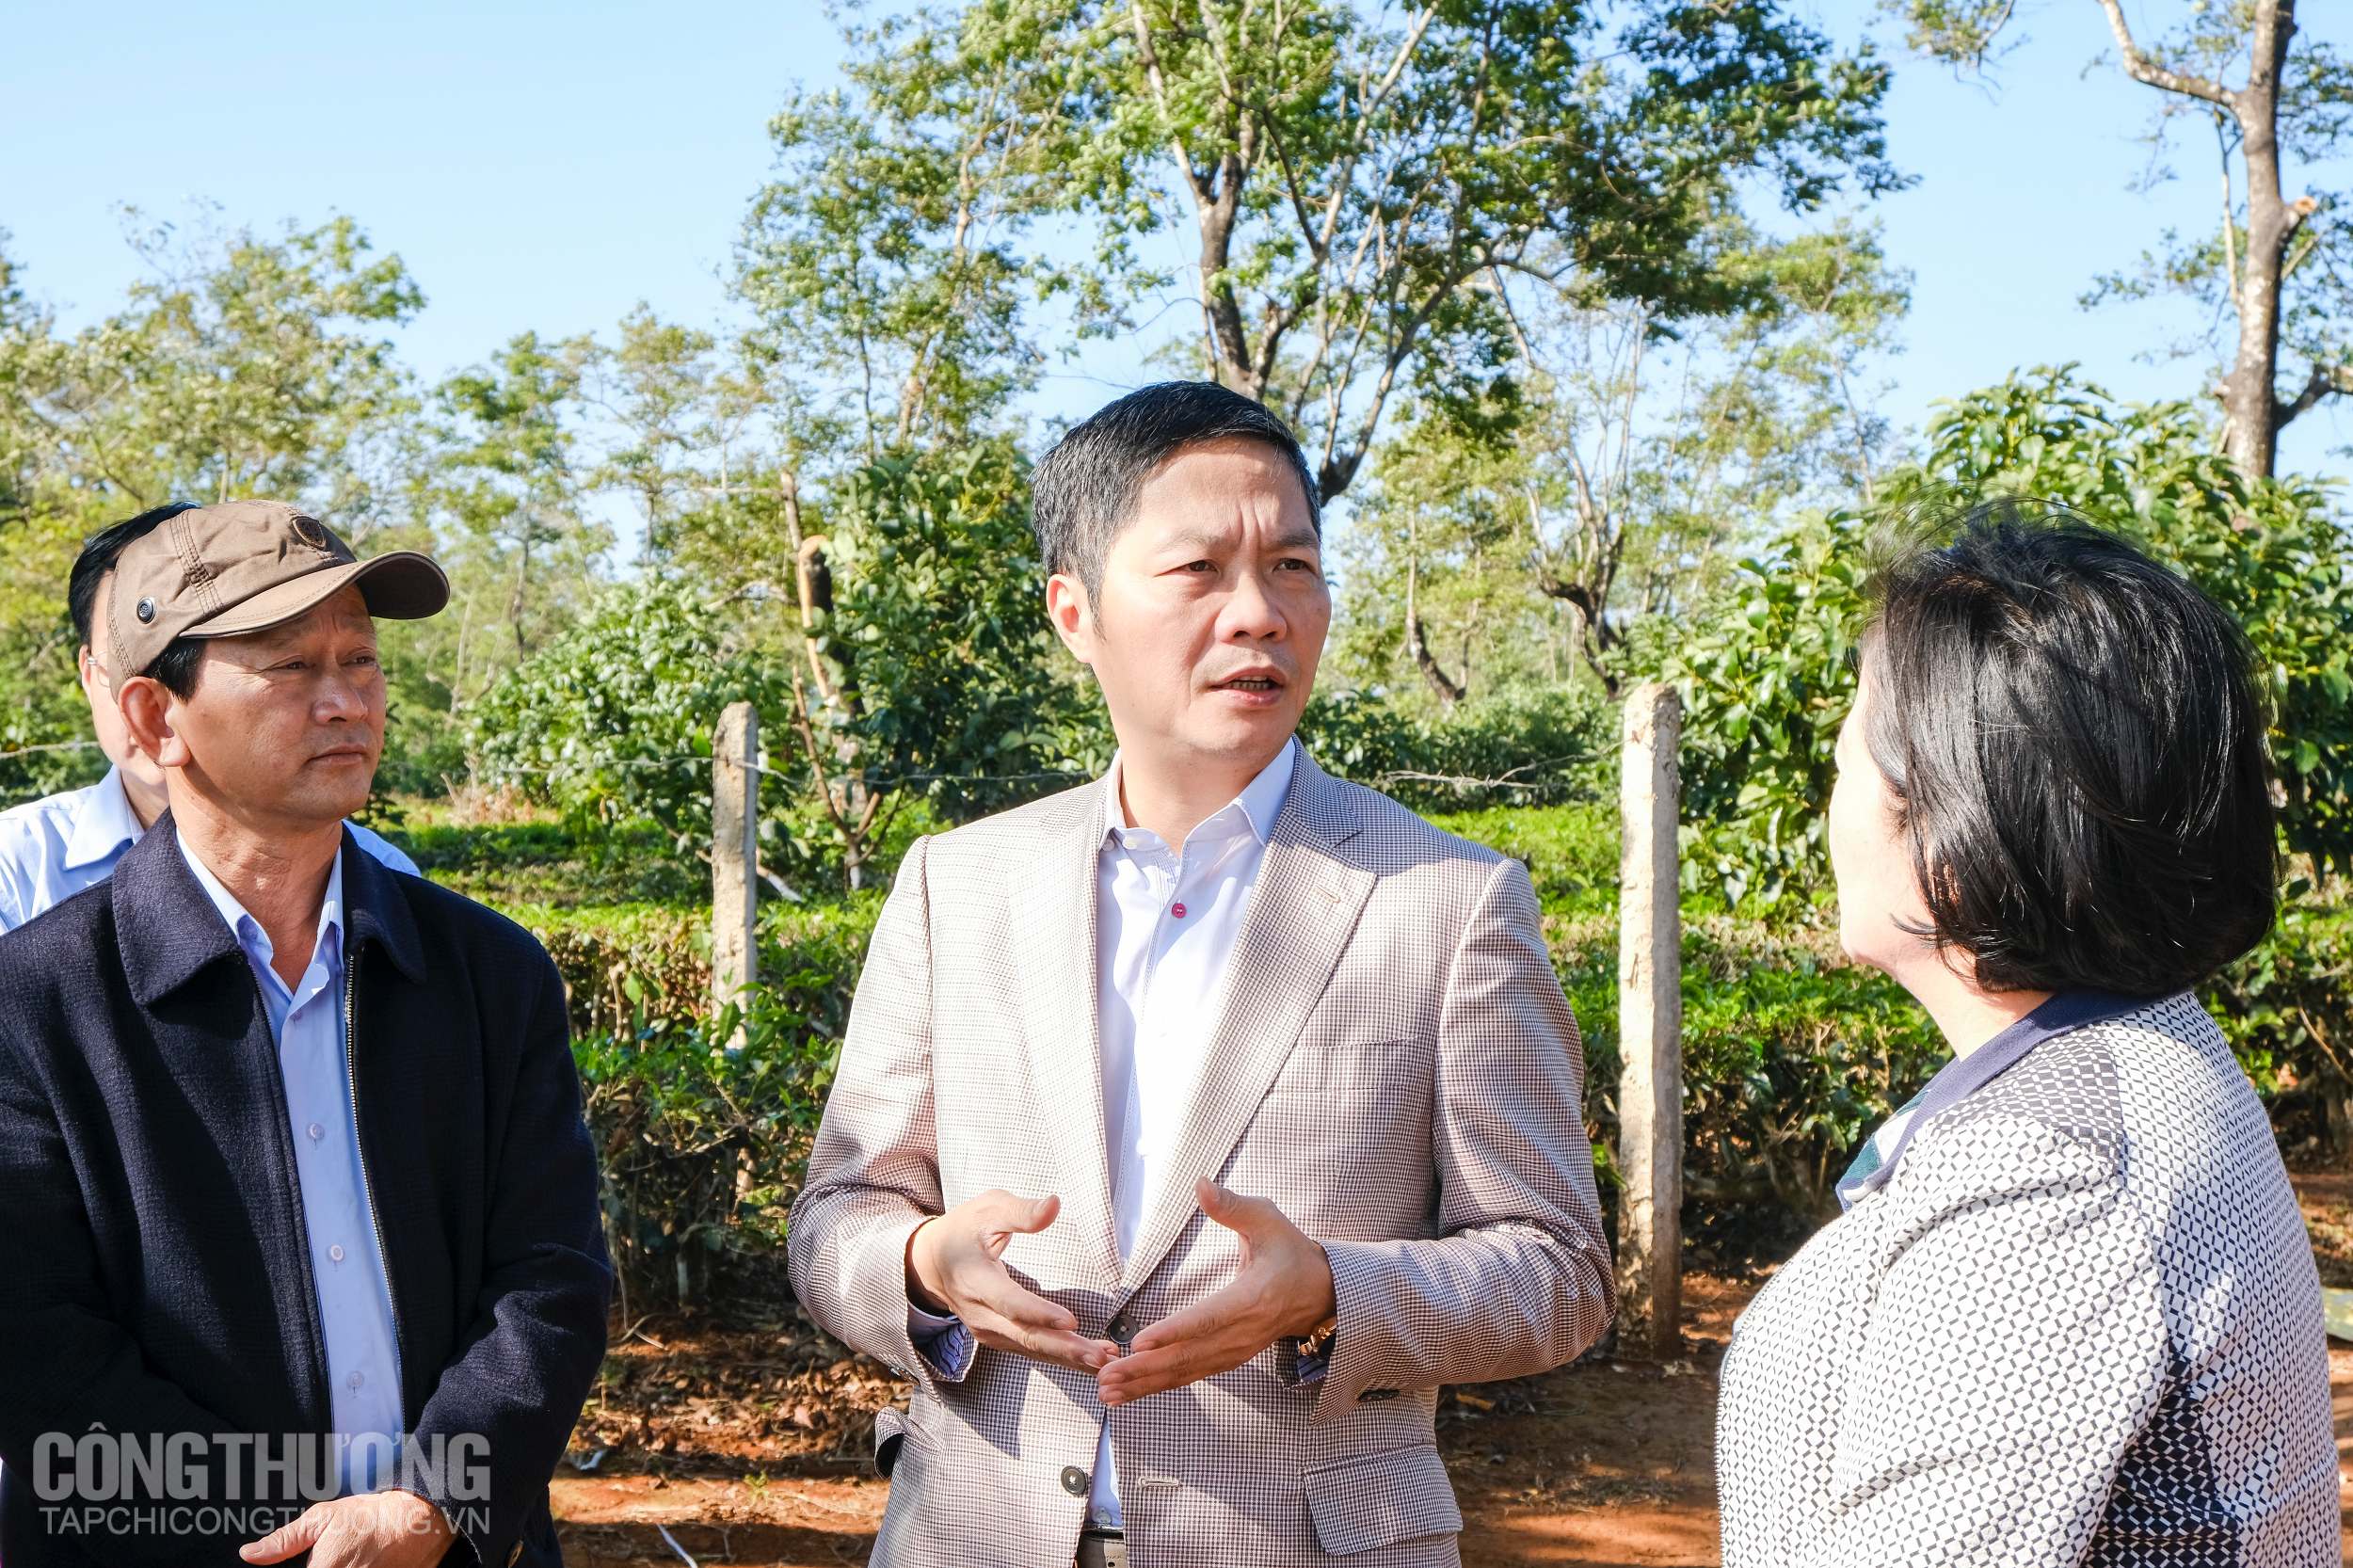 Bộ trưởng Trần Tuấn Anh và Bí thư Tỉnh uỷ Gia Lai - Dương Văn Trang lắng nghe chia sẻ thực tế của nhà đầu tư vào lĩnh vực điện gió